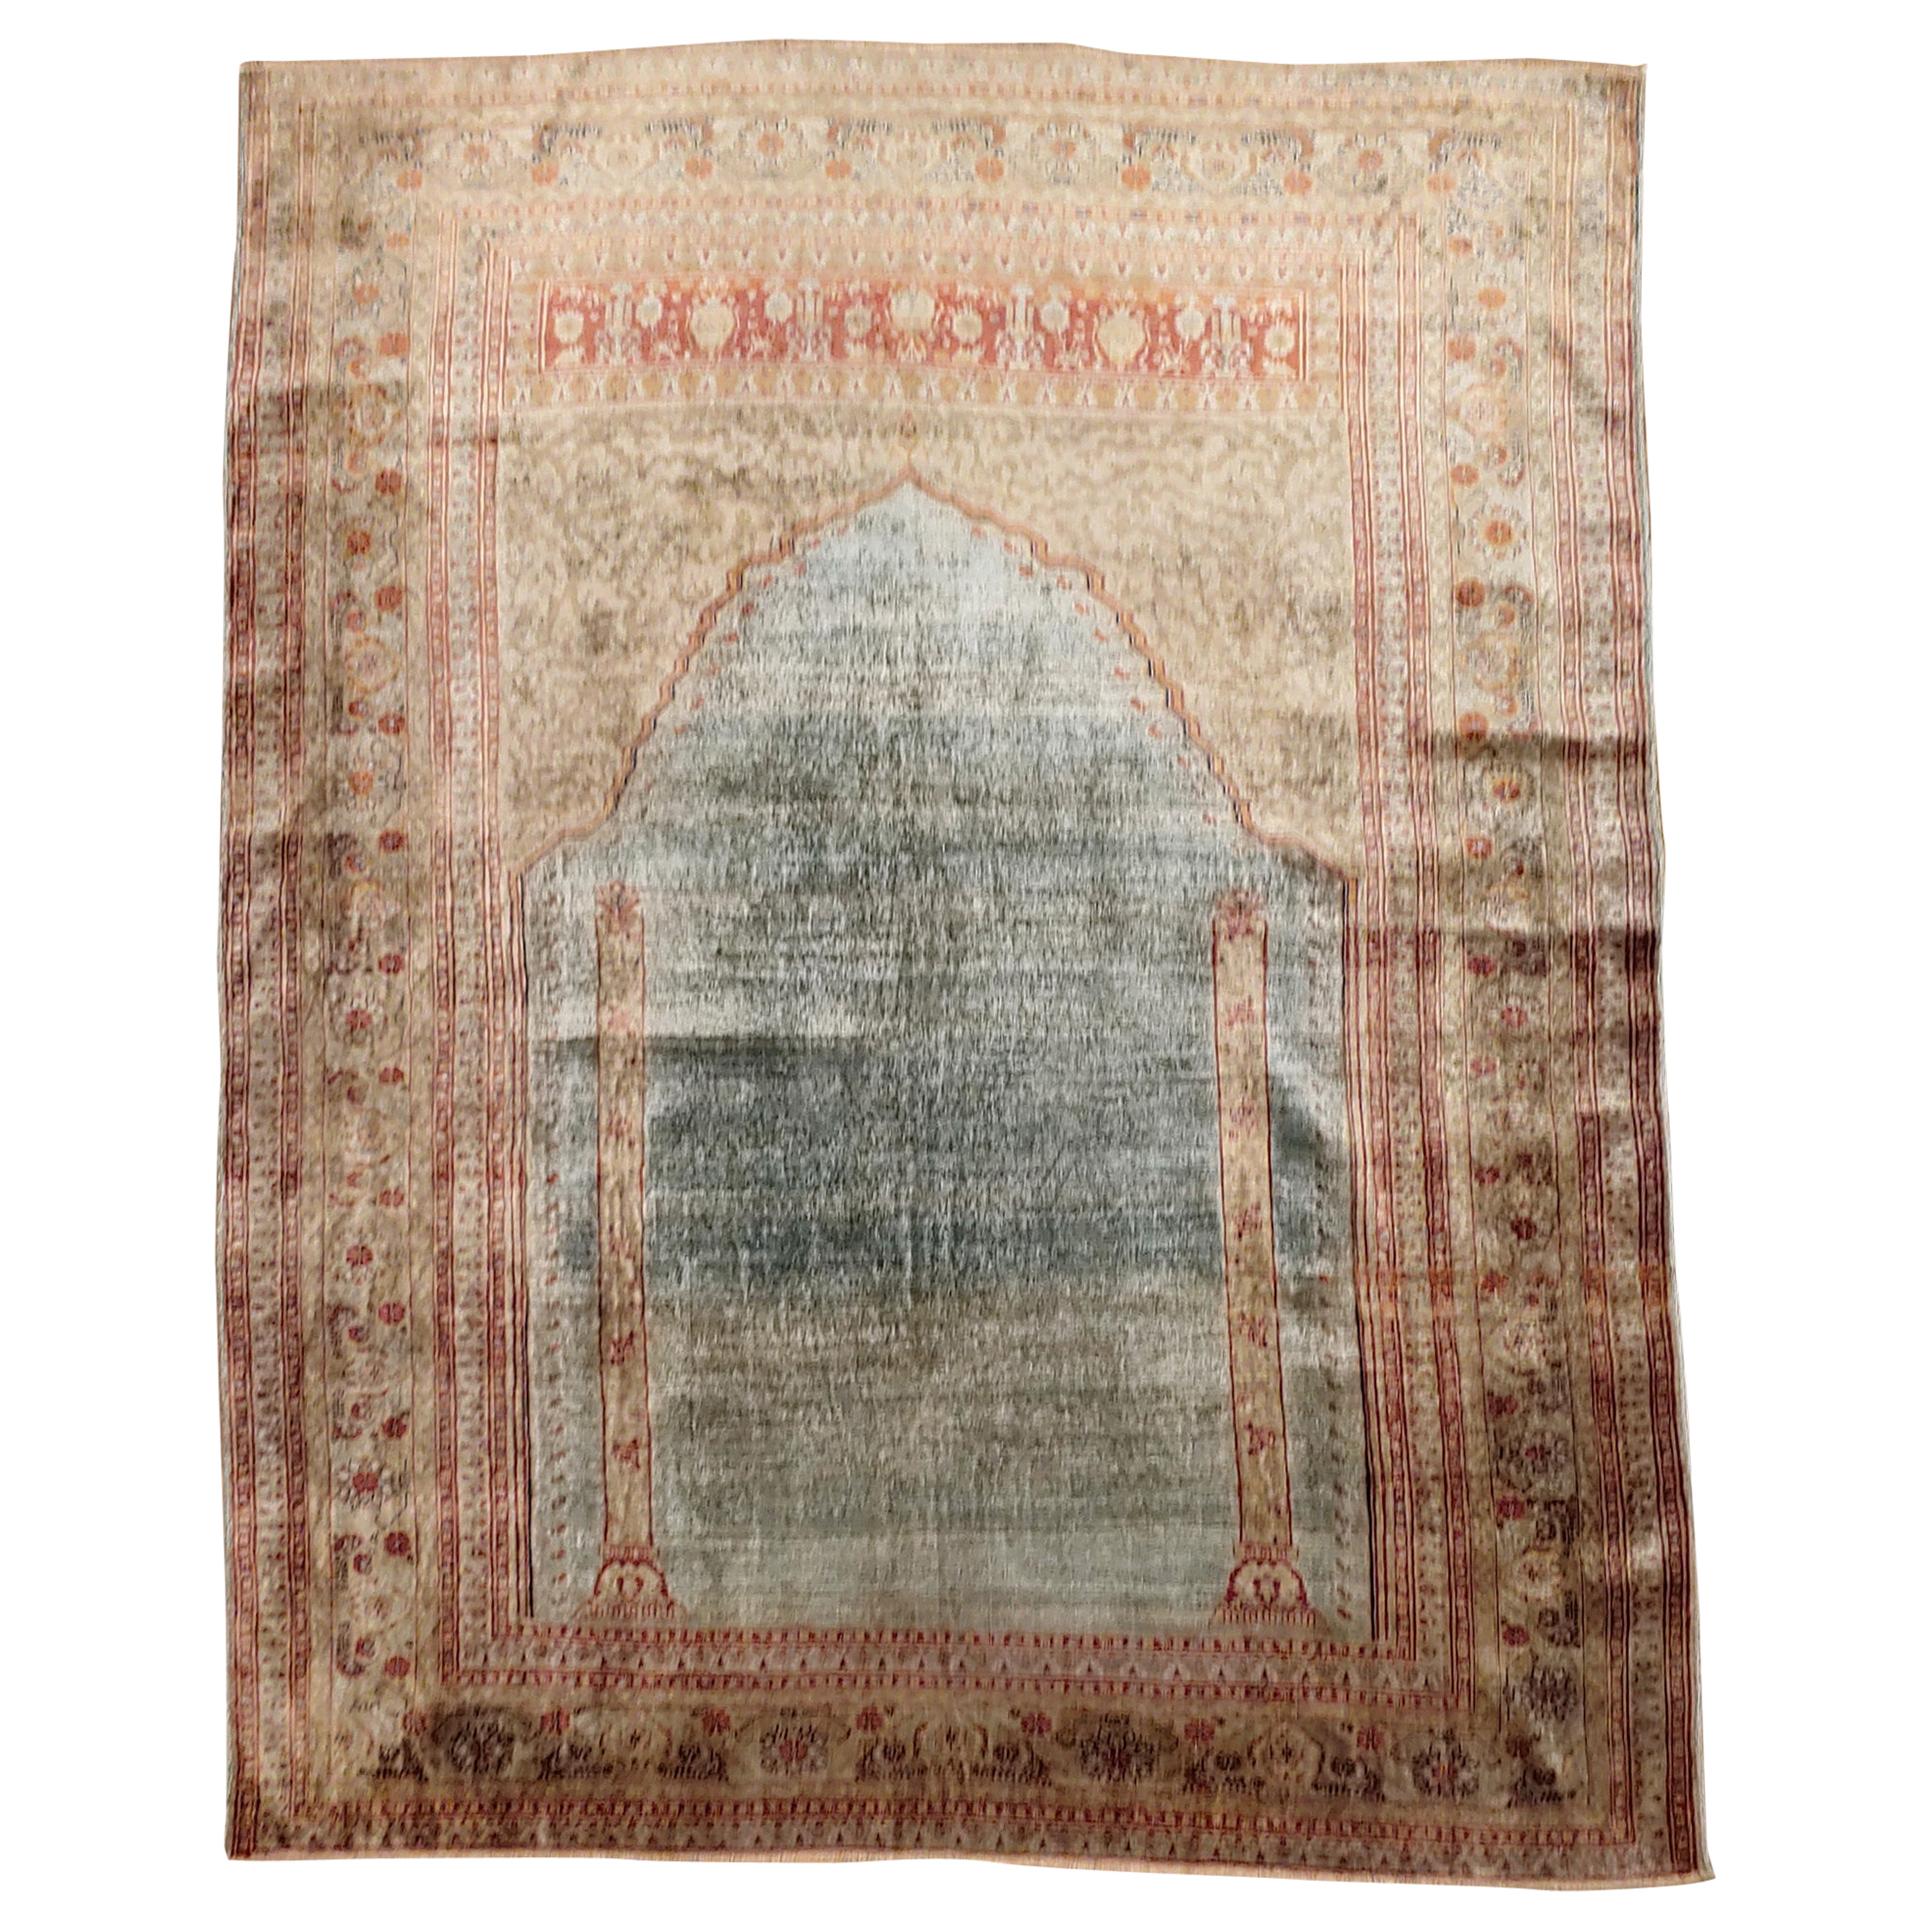 Antique Turkish Silk Ghiordes Rug Prayer Design, Aqua Field with Terracotta